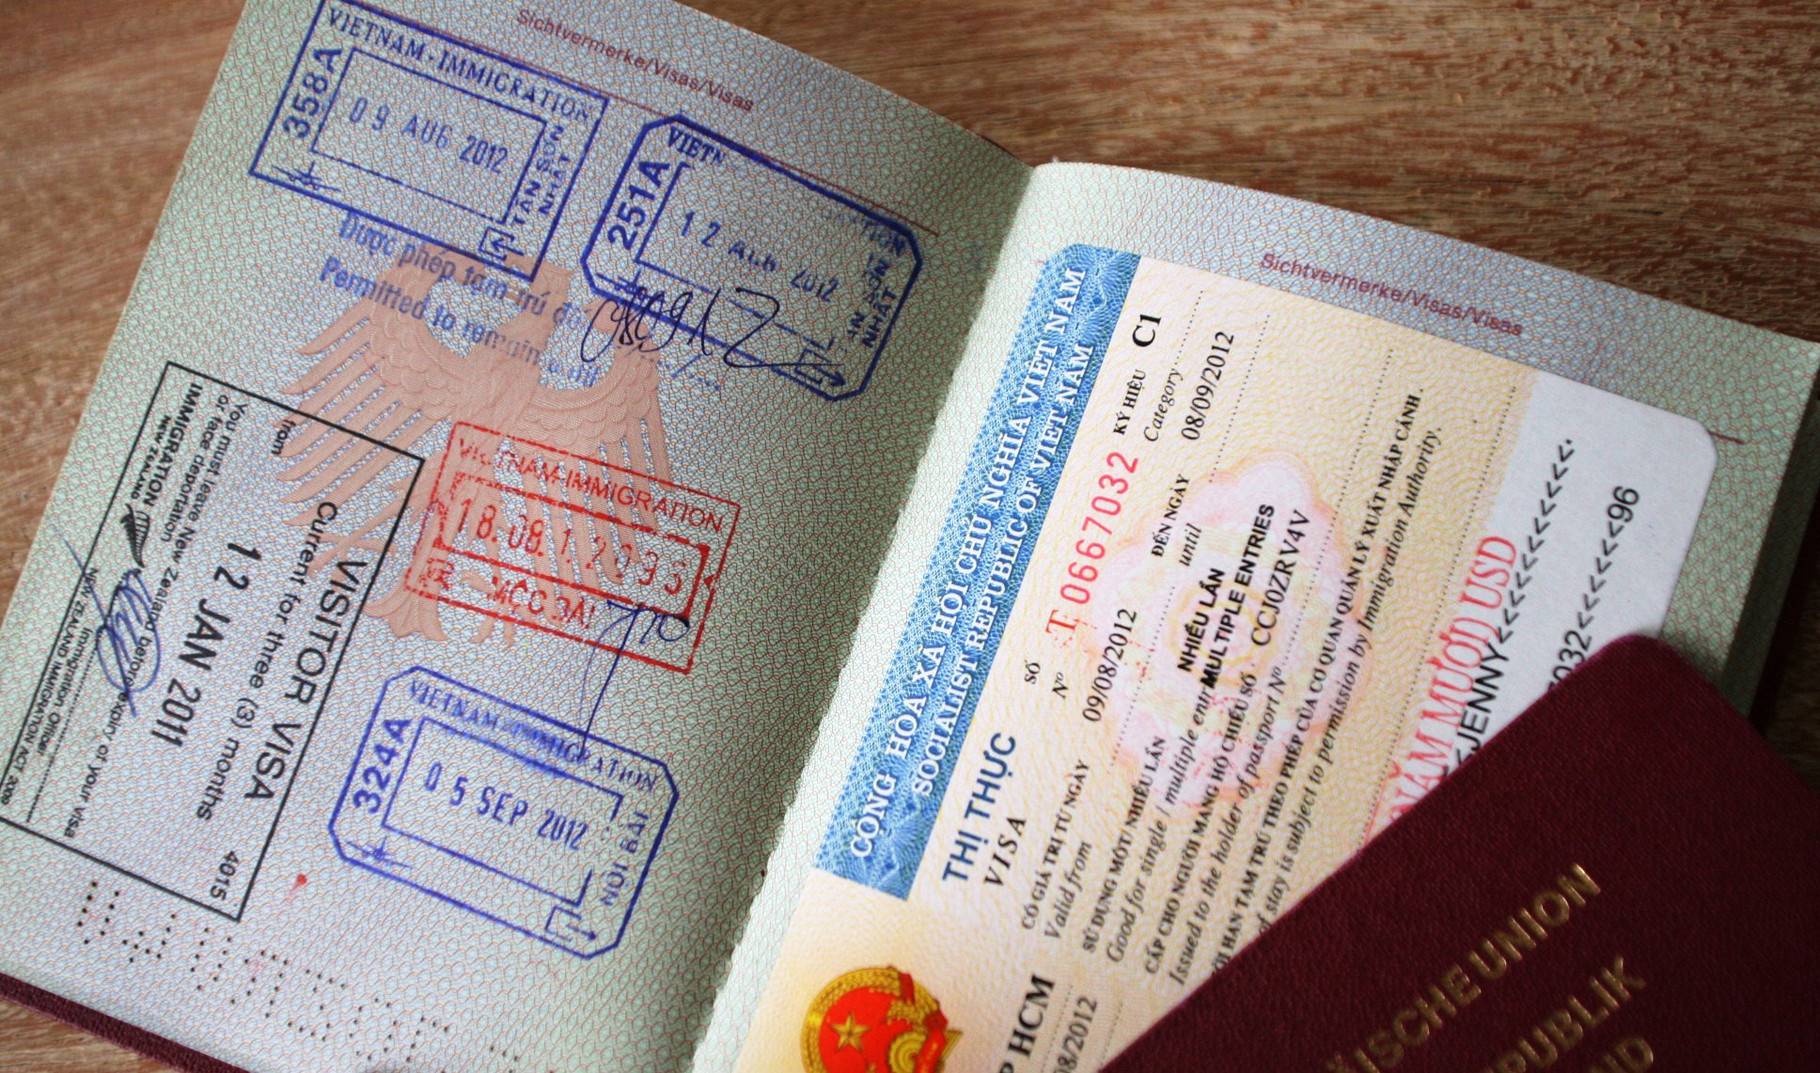 Иммиграция во вьетнам из прссии: как переехать жить во вьетнам на пмж
иммиграция во вьетнам из прссии: как переехать жить во вьетнам на пмж